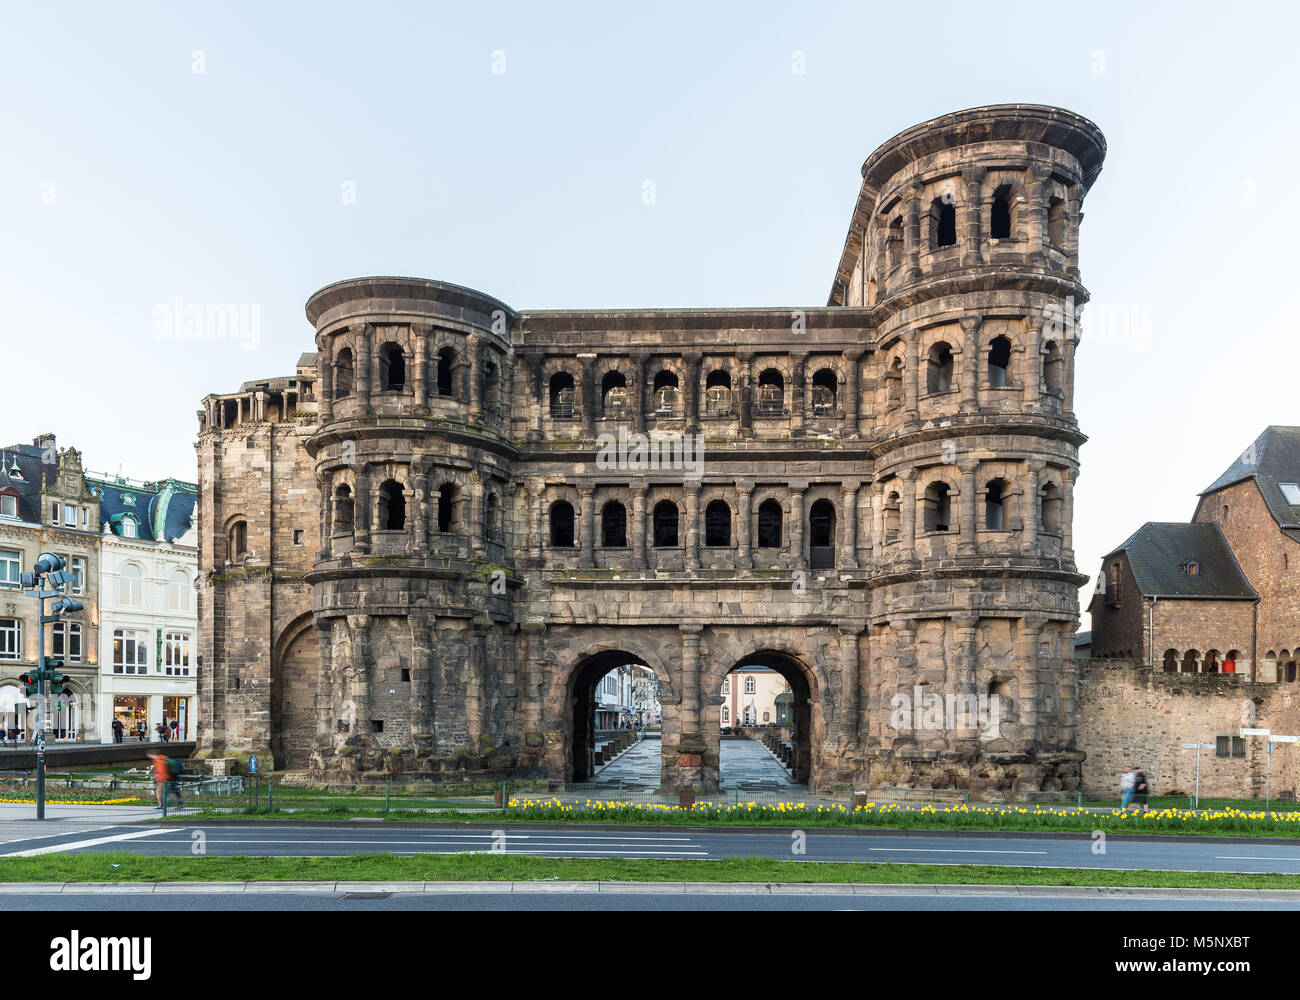 Visualizzazione classica del celebre Porta Nigra, la più grande città romana monumento di gate a nord delle Alpi, nella vecchia città di Treviri, Rheinland Pfalz, Germania Foto Stock